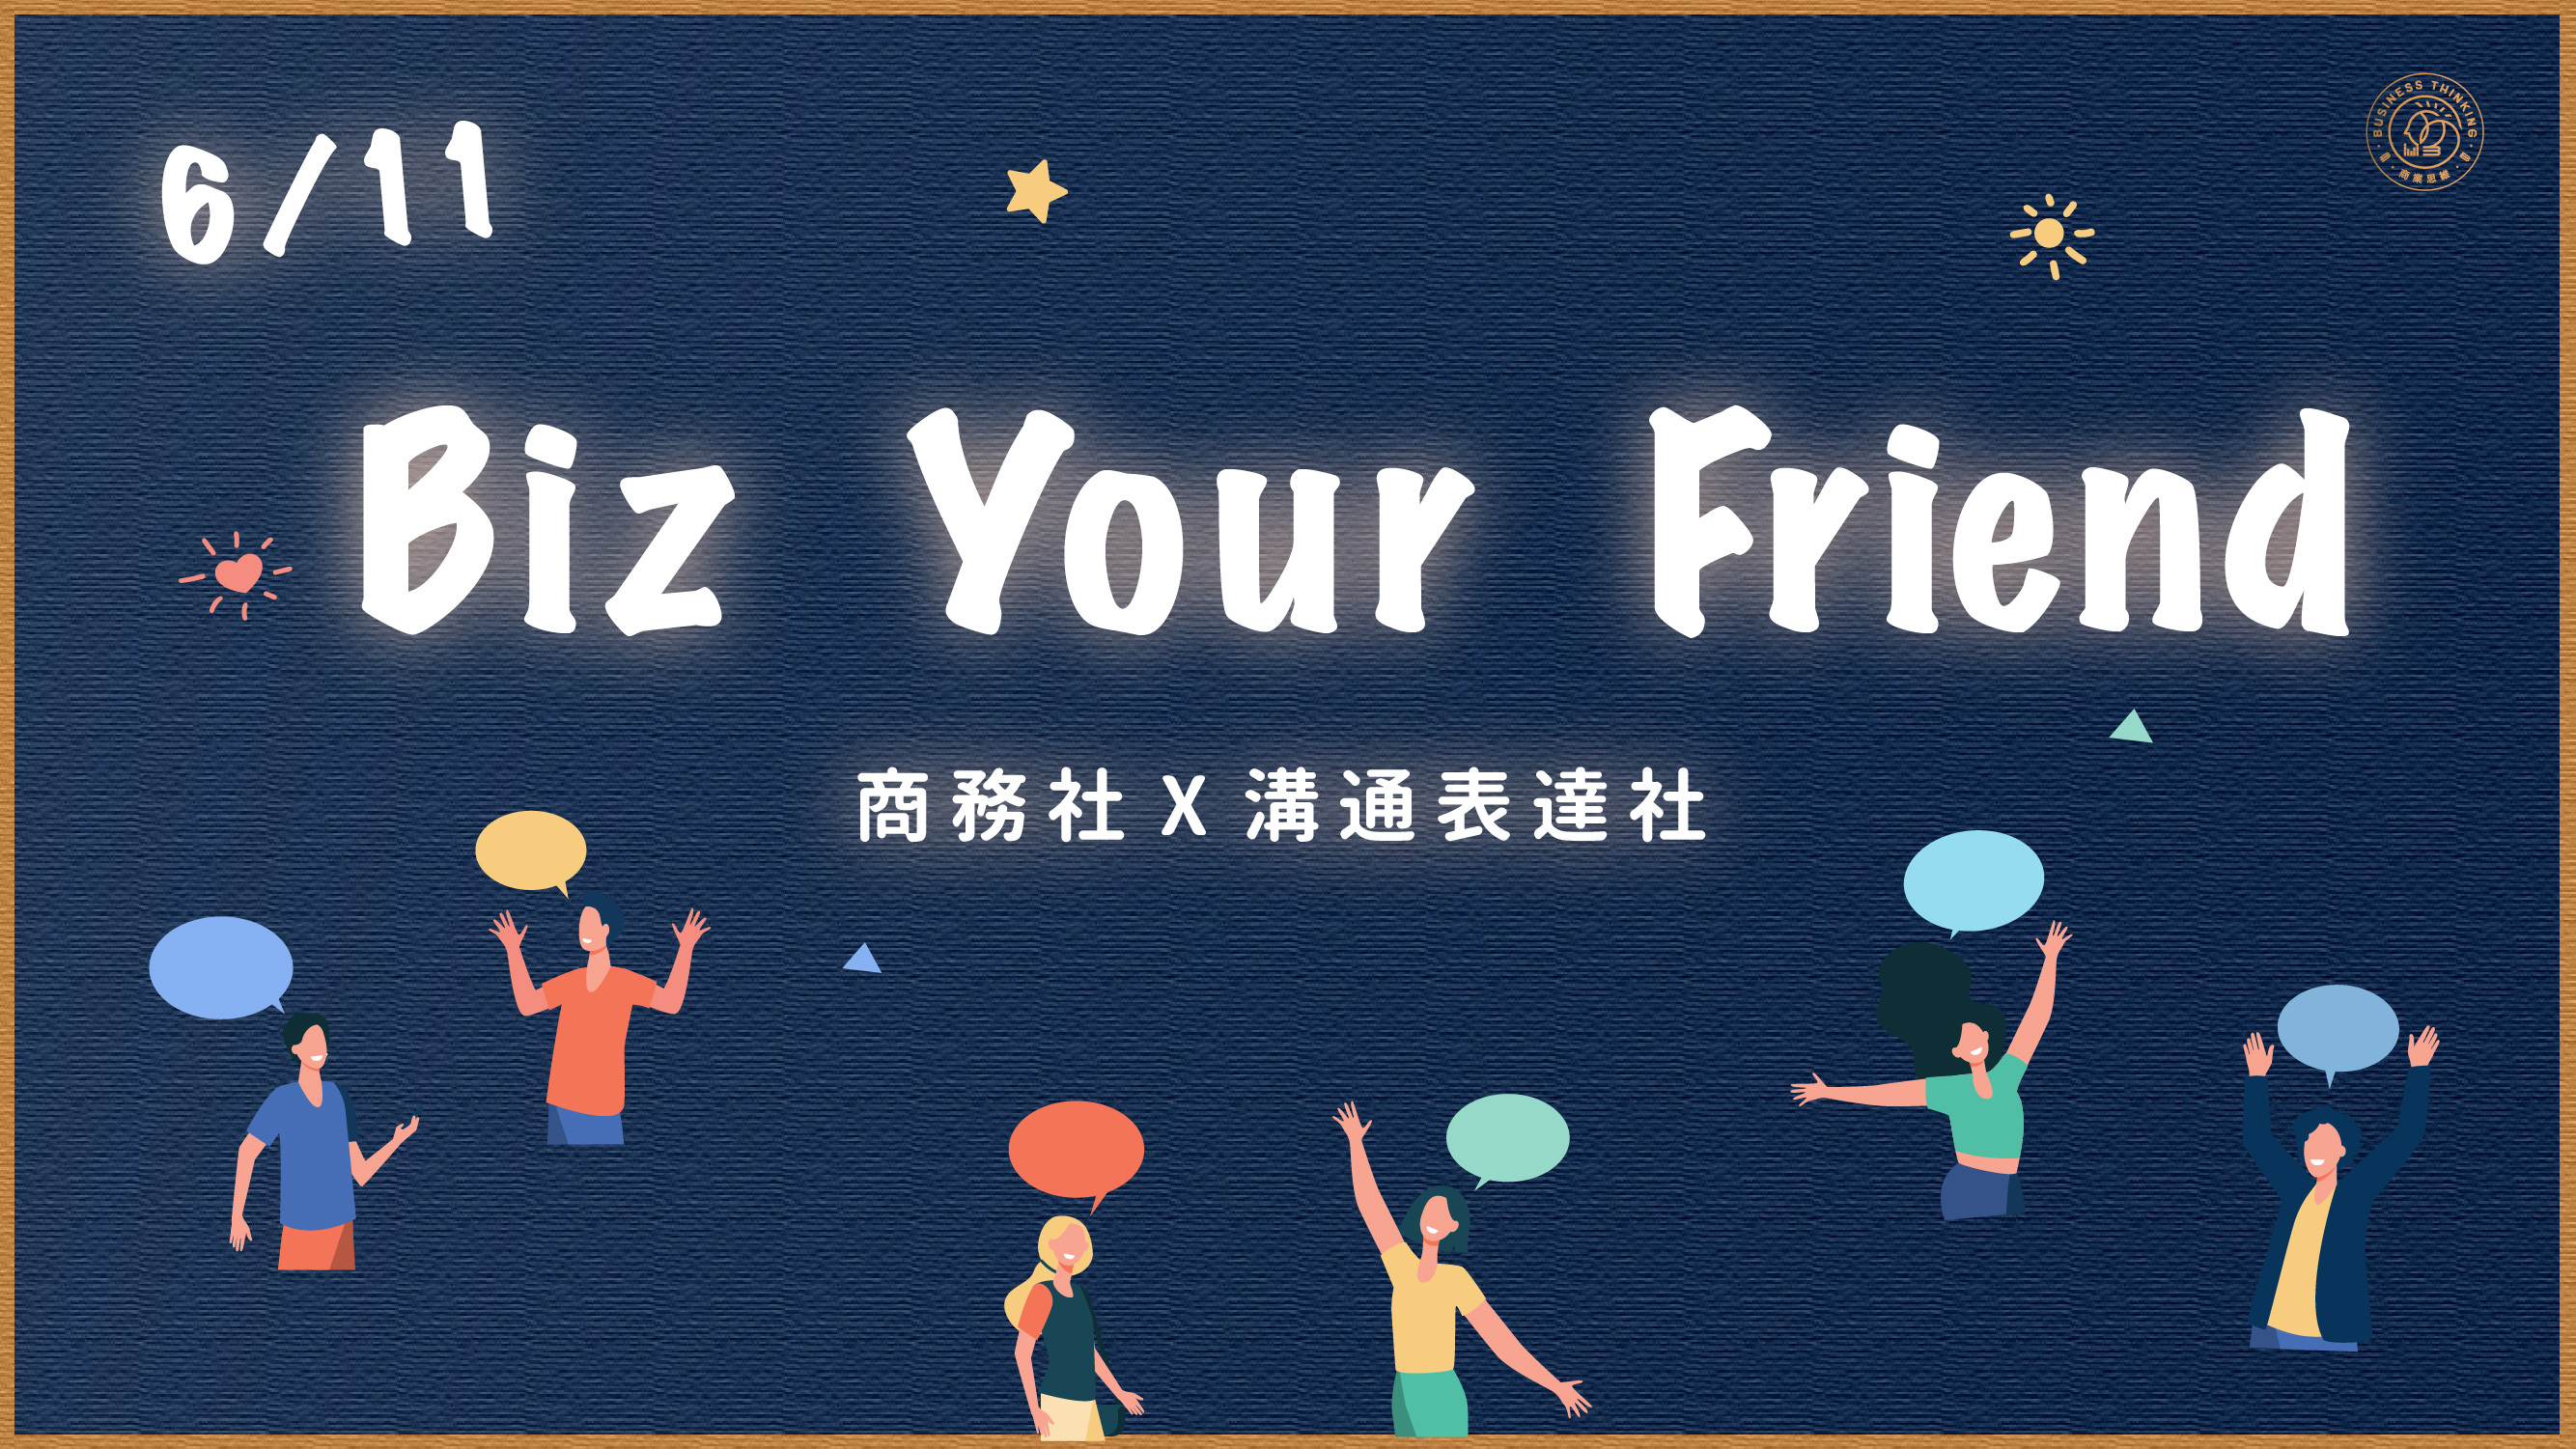 6/11 社團聯合活動 - BIZ your friend 課程封面